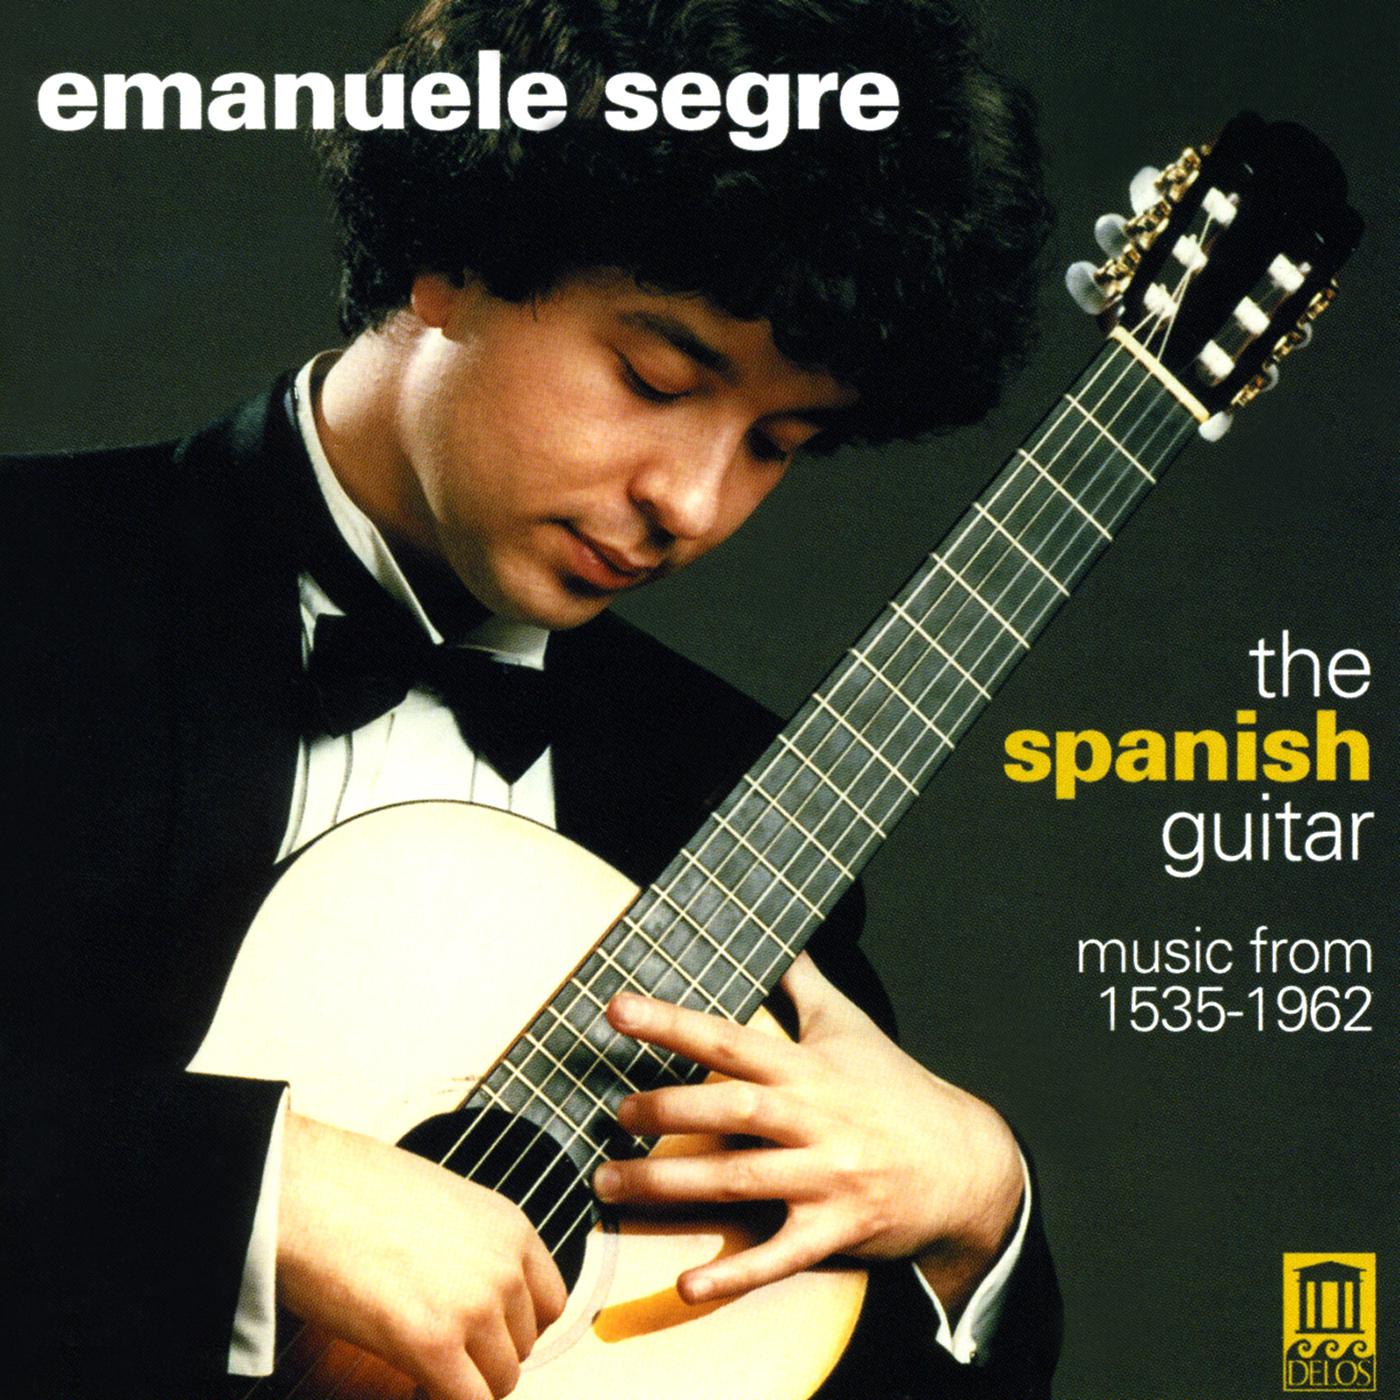 Guitar Music - MILAN, L. / MUDARRA, A. / NARVAEZ, L. / SANZ, G. / MURCIA, S. / AGUADO, D. / ALBENIZ, I. (The Spanish Guitar) (Segre)